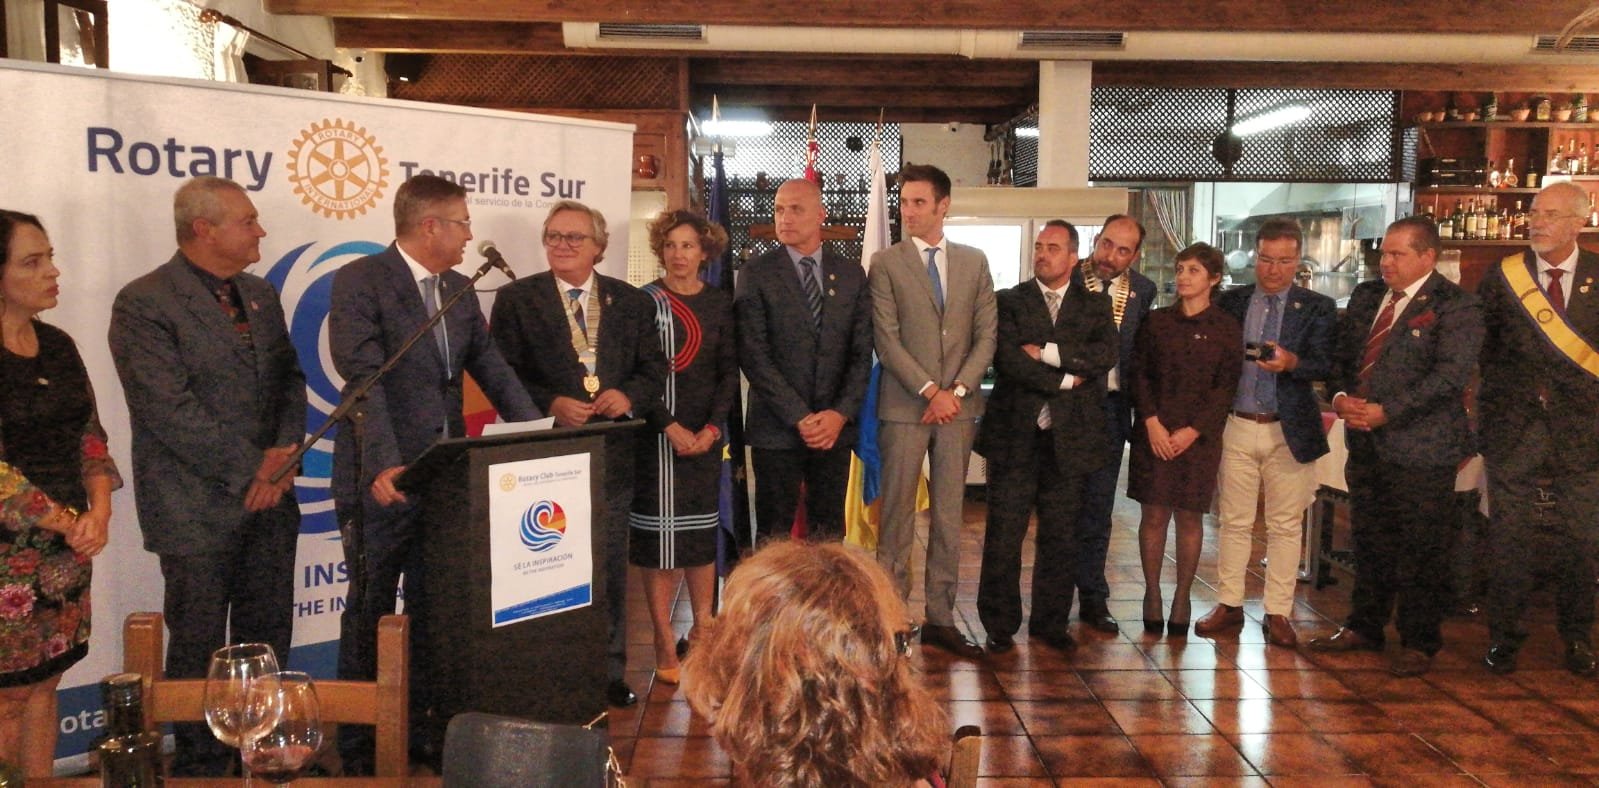 El Rotary Club Tenerife Sur da la bienvenida a 4 nuevos miembros